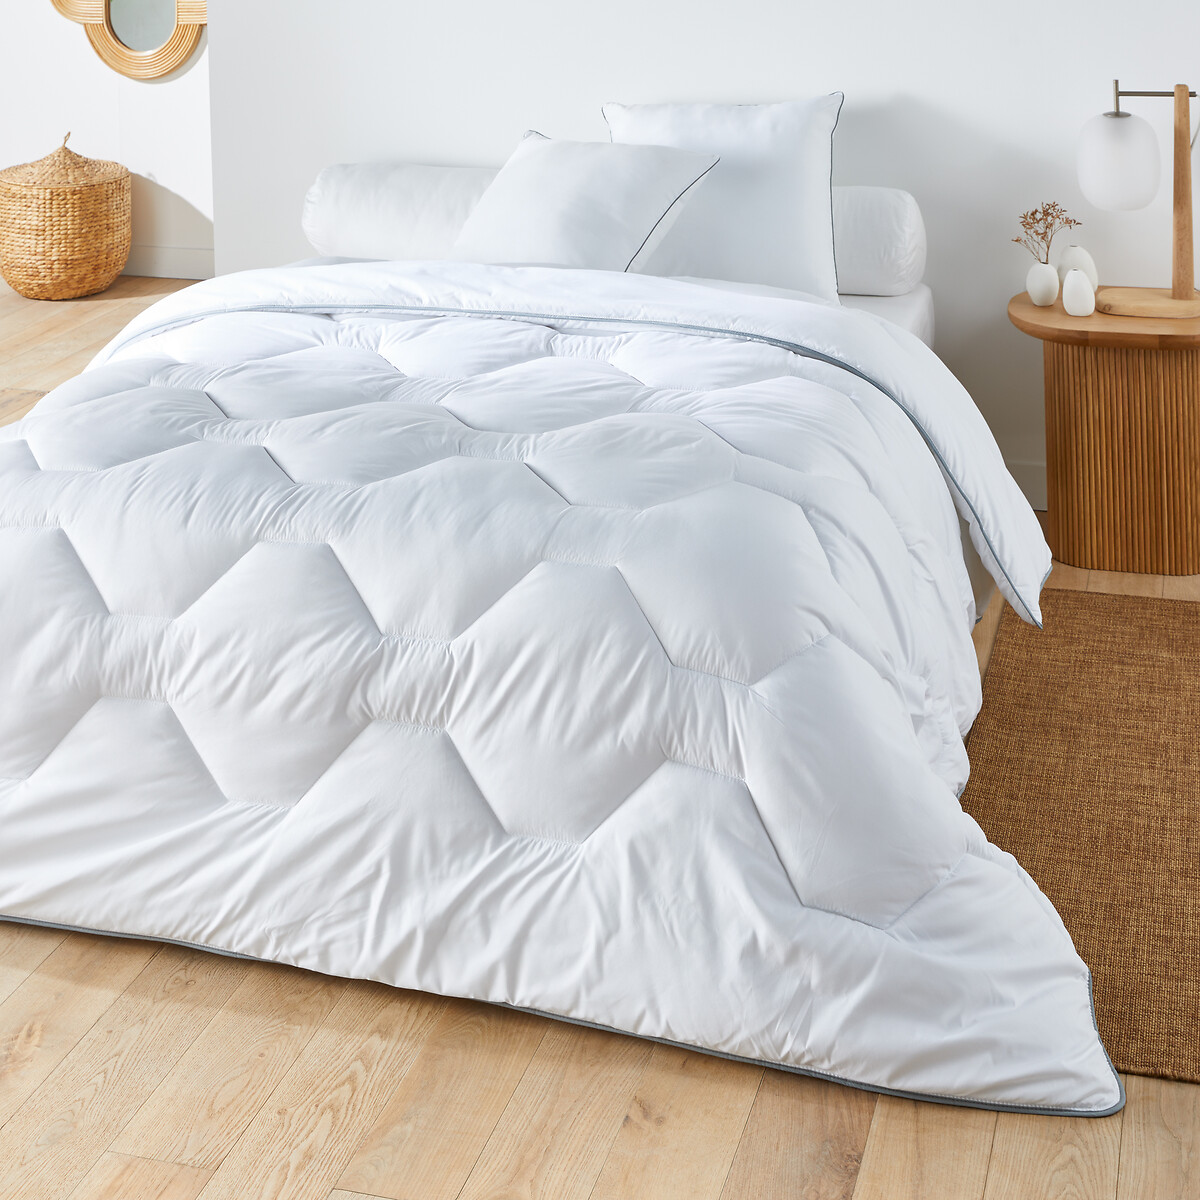 Одеяло из синтетического материала для прохладных помещений Confort htel  200 x 200 см белый LaRedoute, размер 200 x 200 см - фото 1